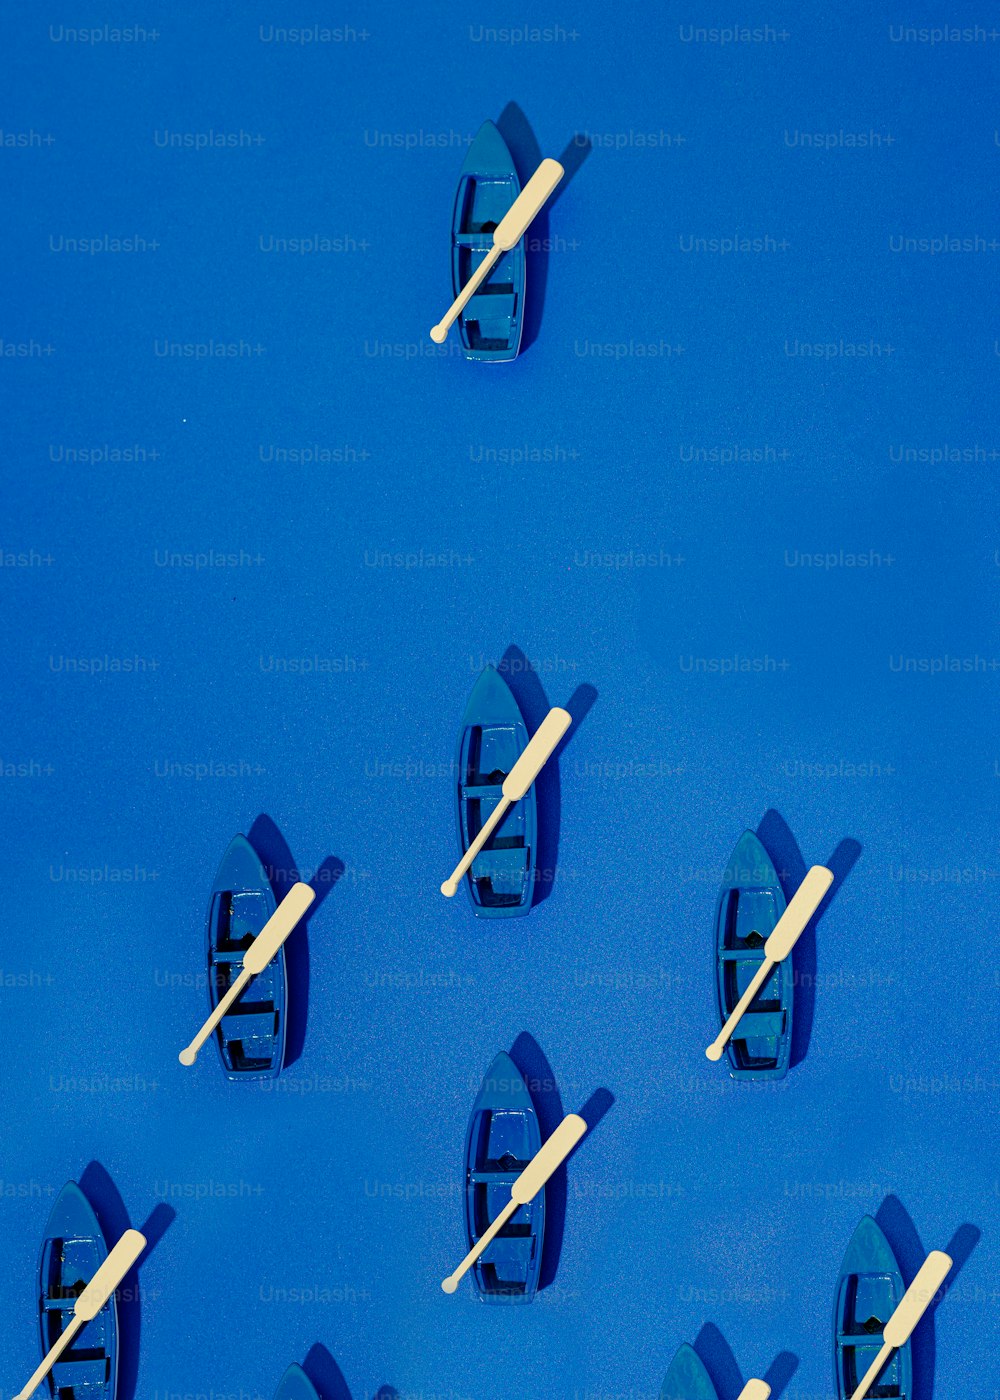 un groupe de petits bateaux flottant sur une surface bleue